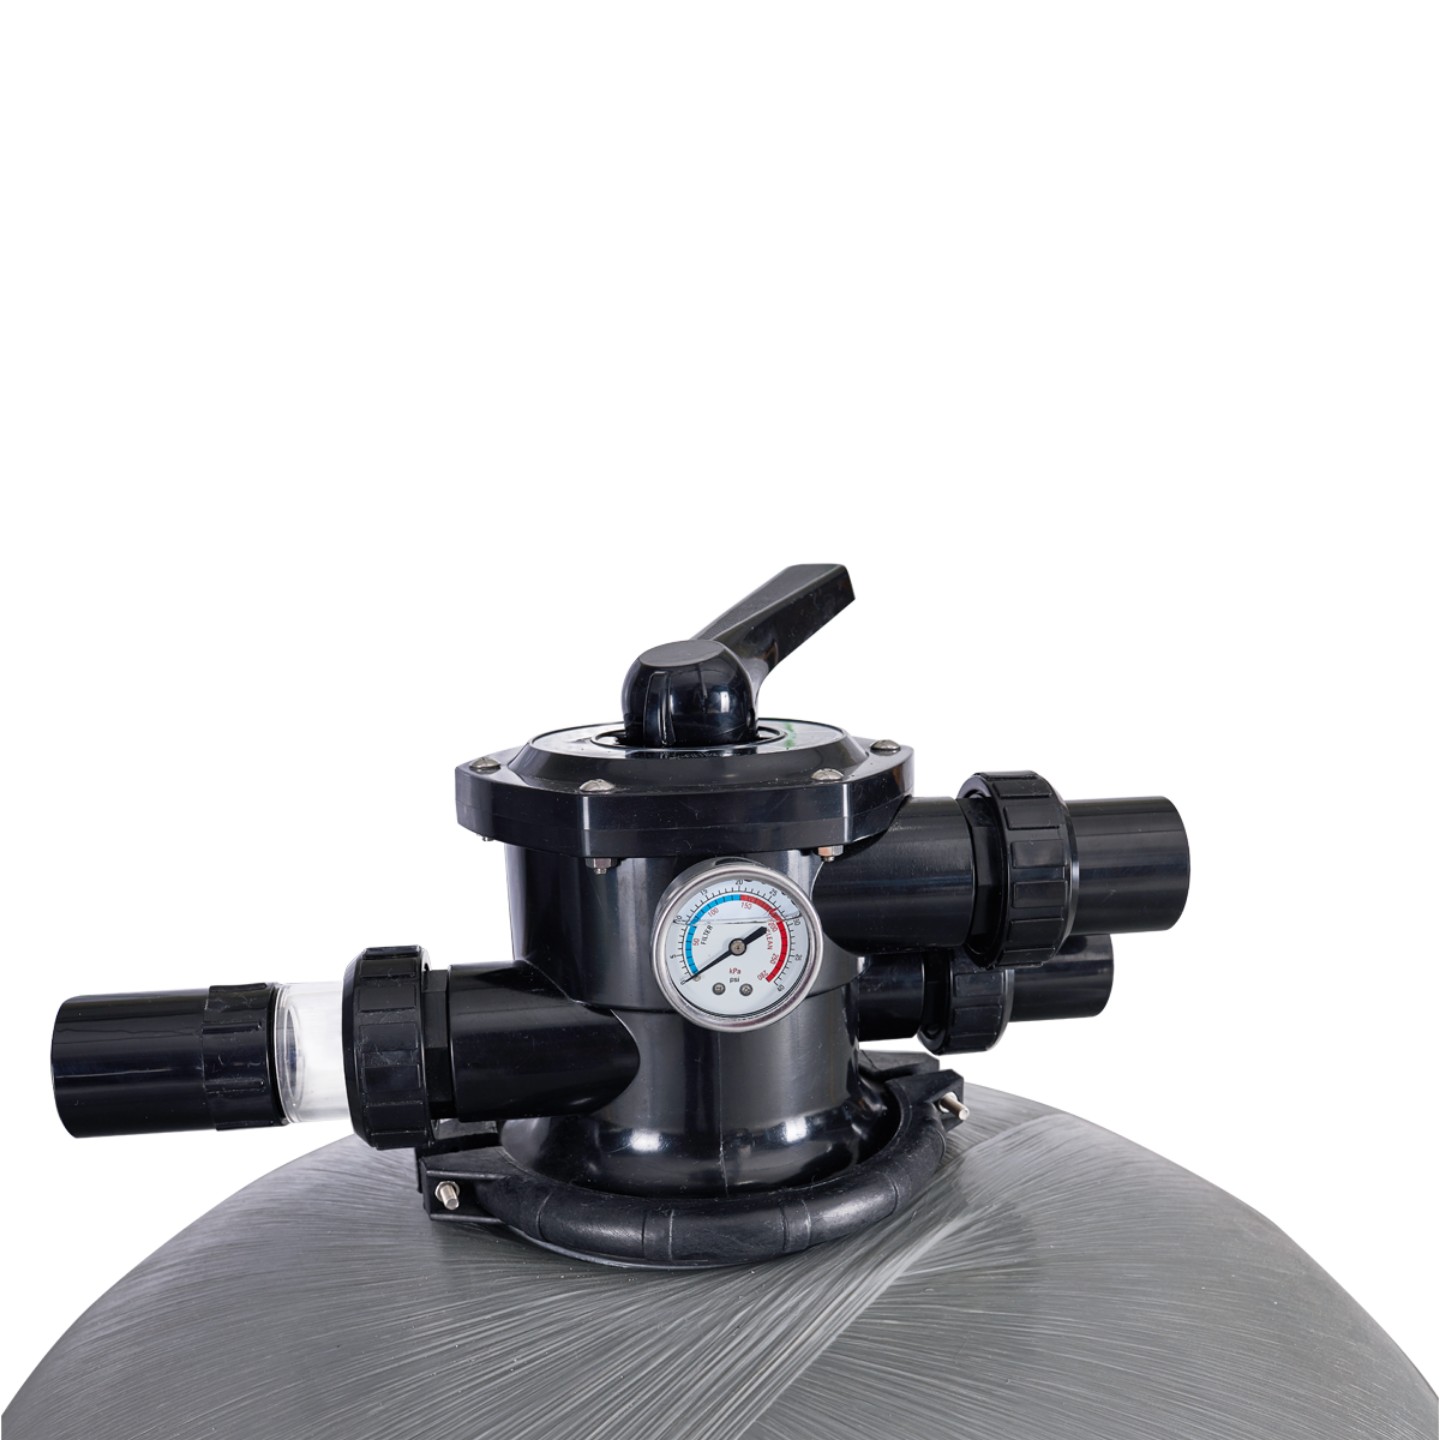 Фильтр AquaViva P30 (23m3/h, 750mm, 300kg, 2" верх)